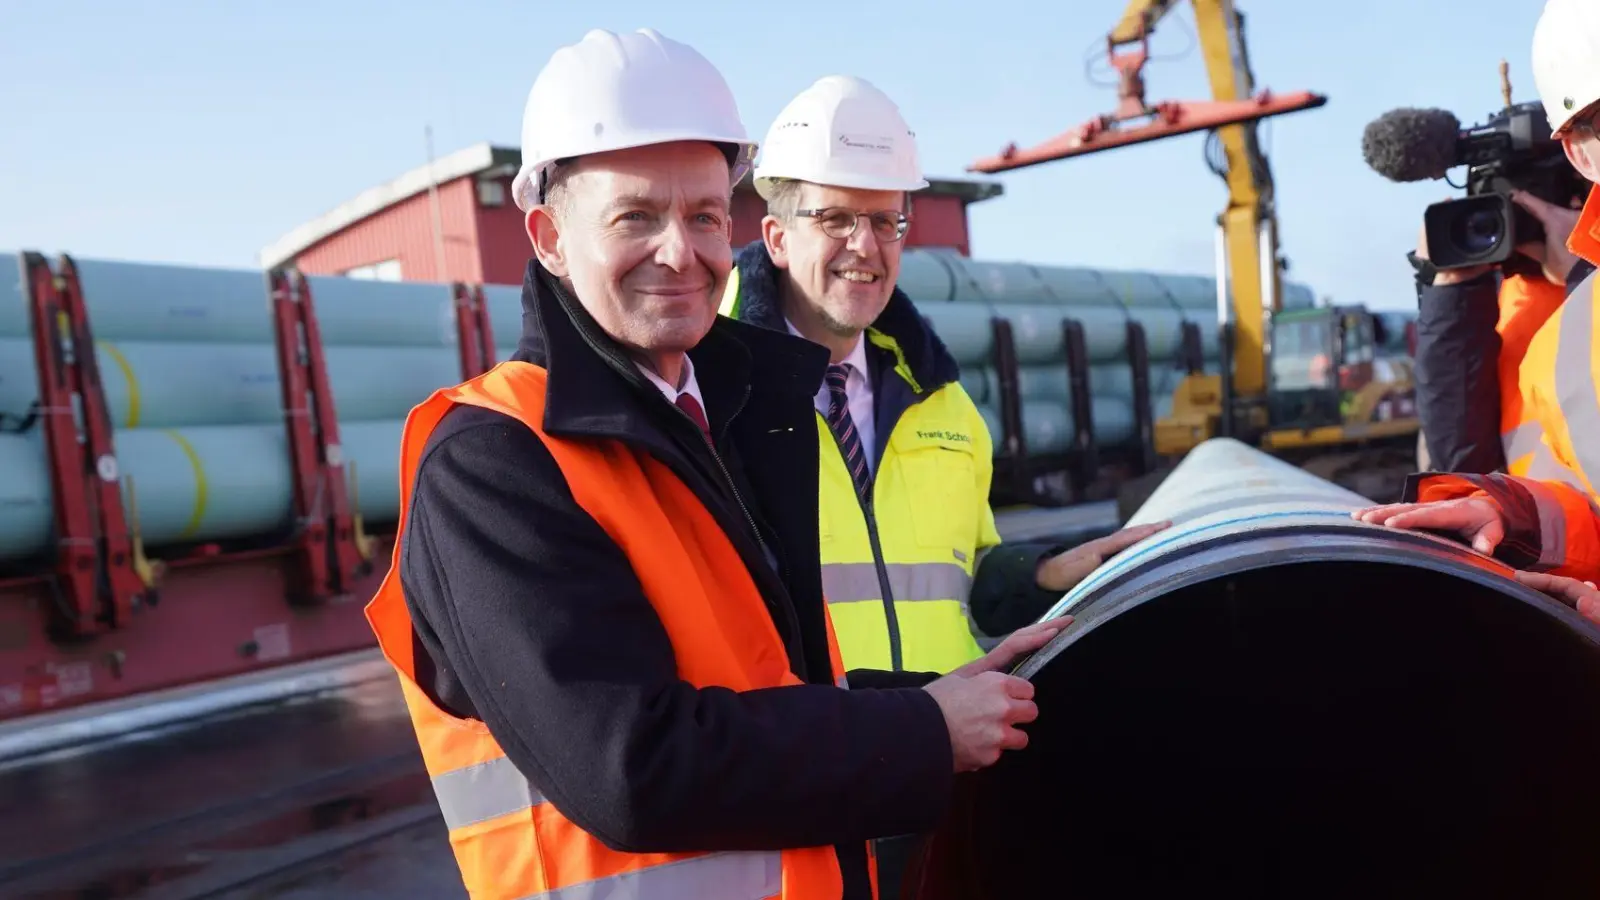 Bundesverkehrsminister Volker Wissing (l) bei einem Pressetermin zum Bau der neuen LNG-Pipeline in Brunsbüttel. An der Pipeline wurden nun Löcher gefunden - die Ermittlungen laufen. (Foto: Marcus Brandt/dpa)